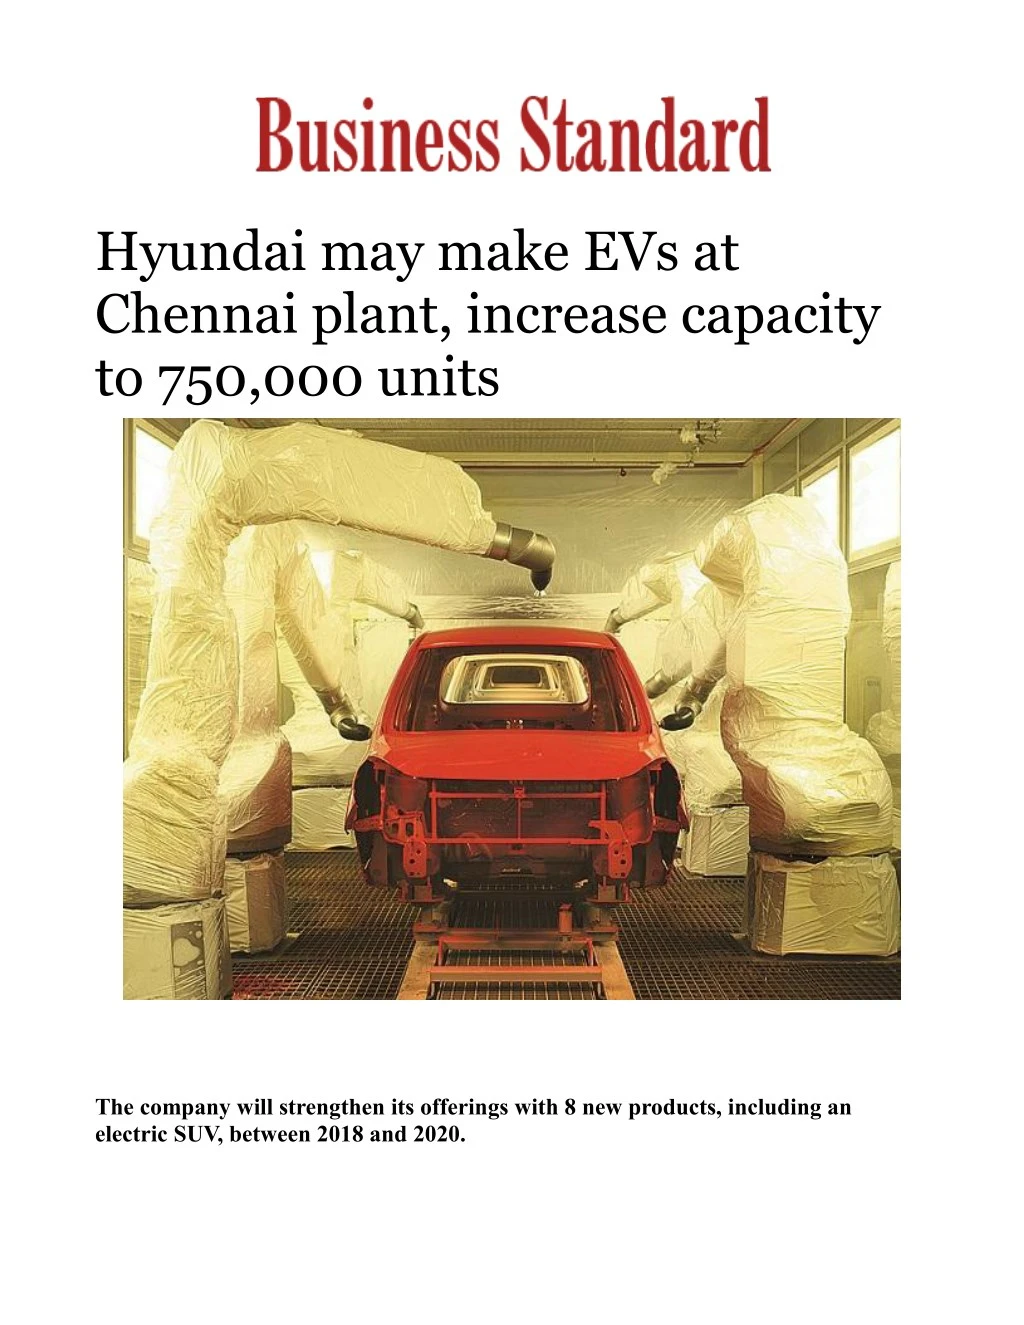 hyundai may make evs at chennai plant increase